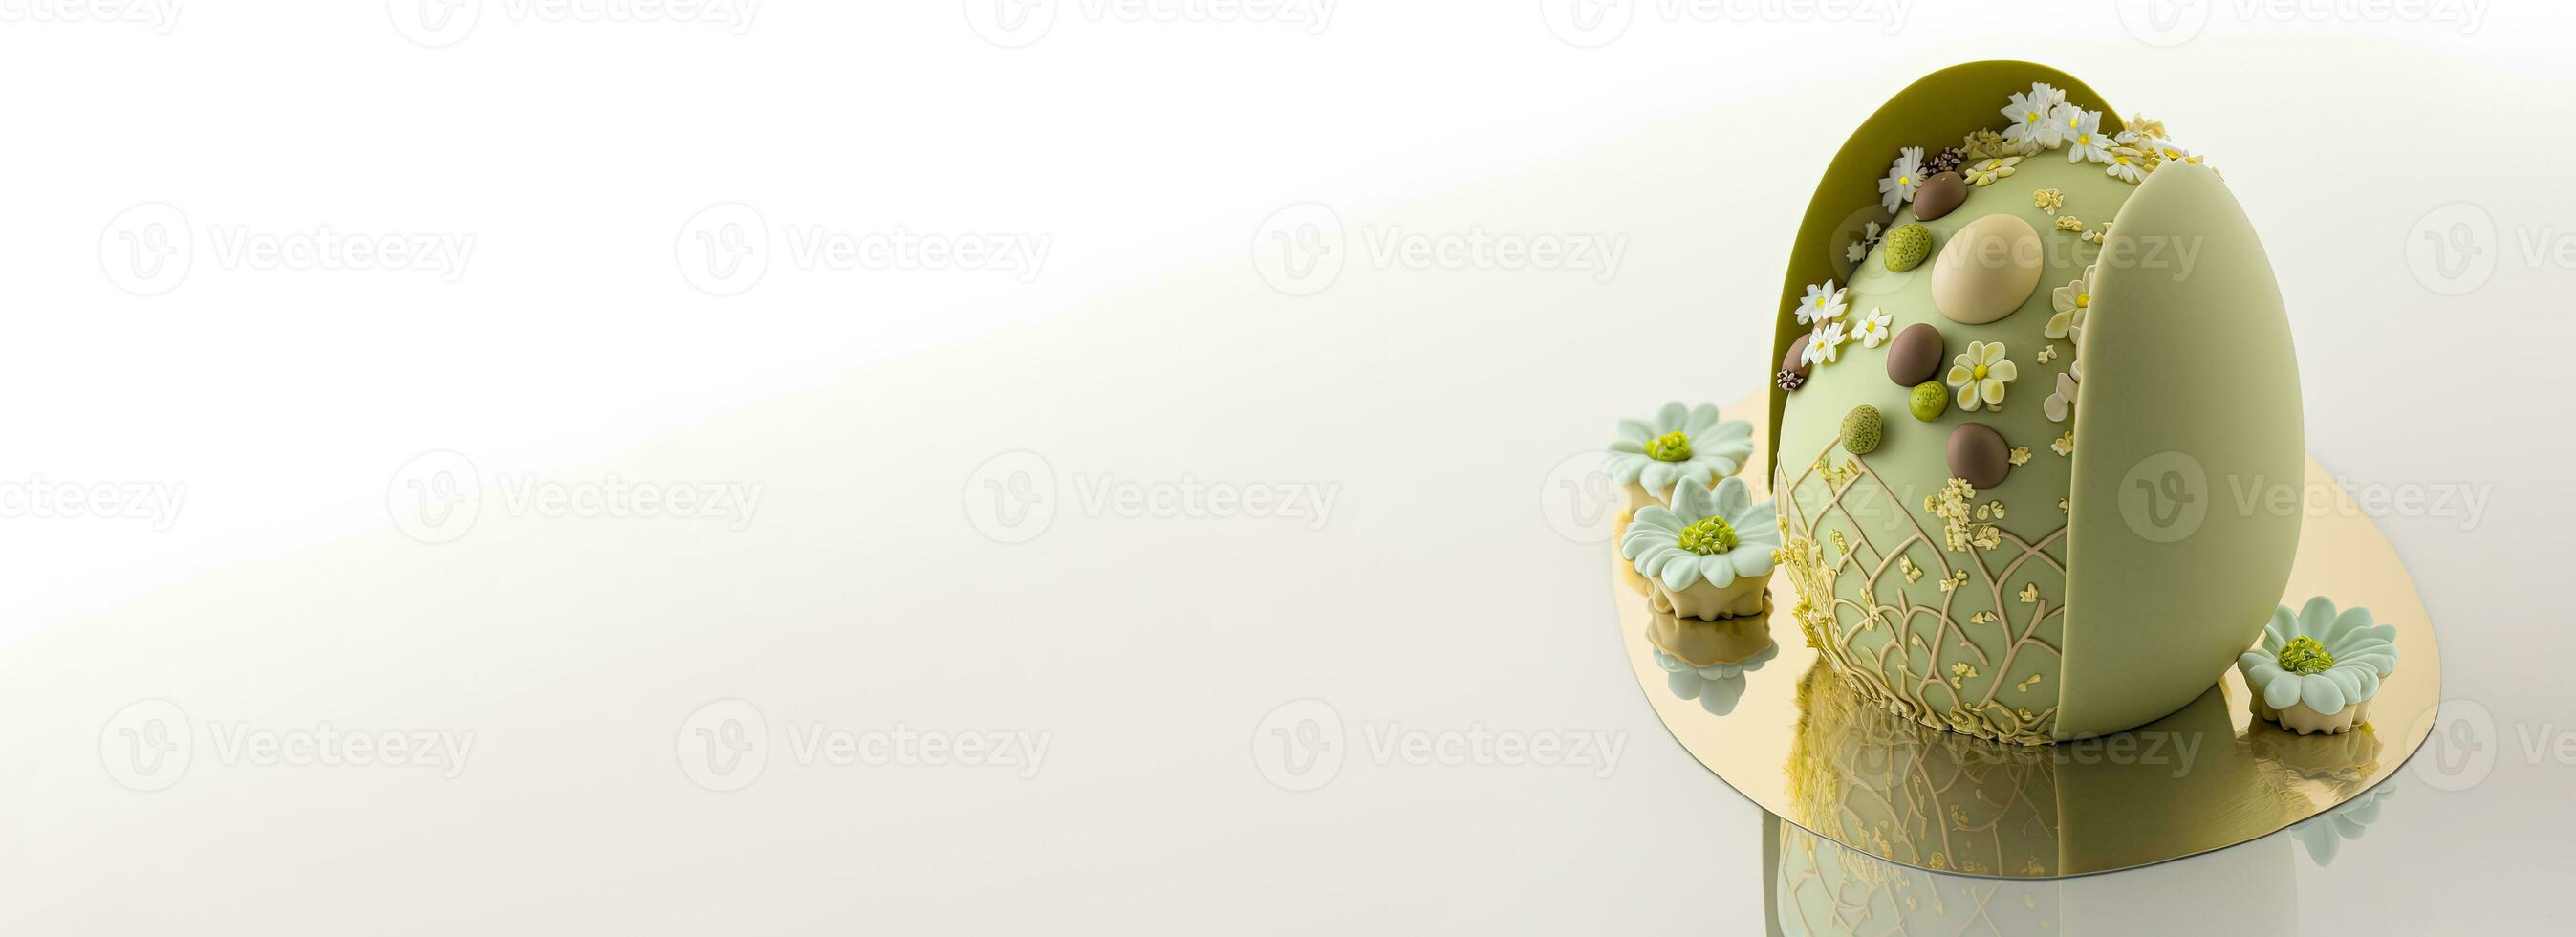 3d hacer de aceituna verde flores decoraive huevo y Copiar espacio. Pascua de Resurrección concepto. foto